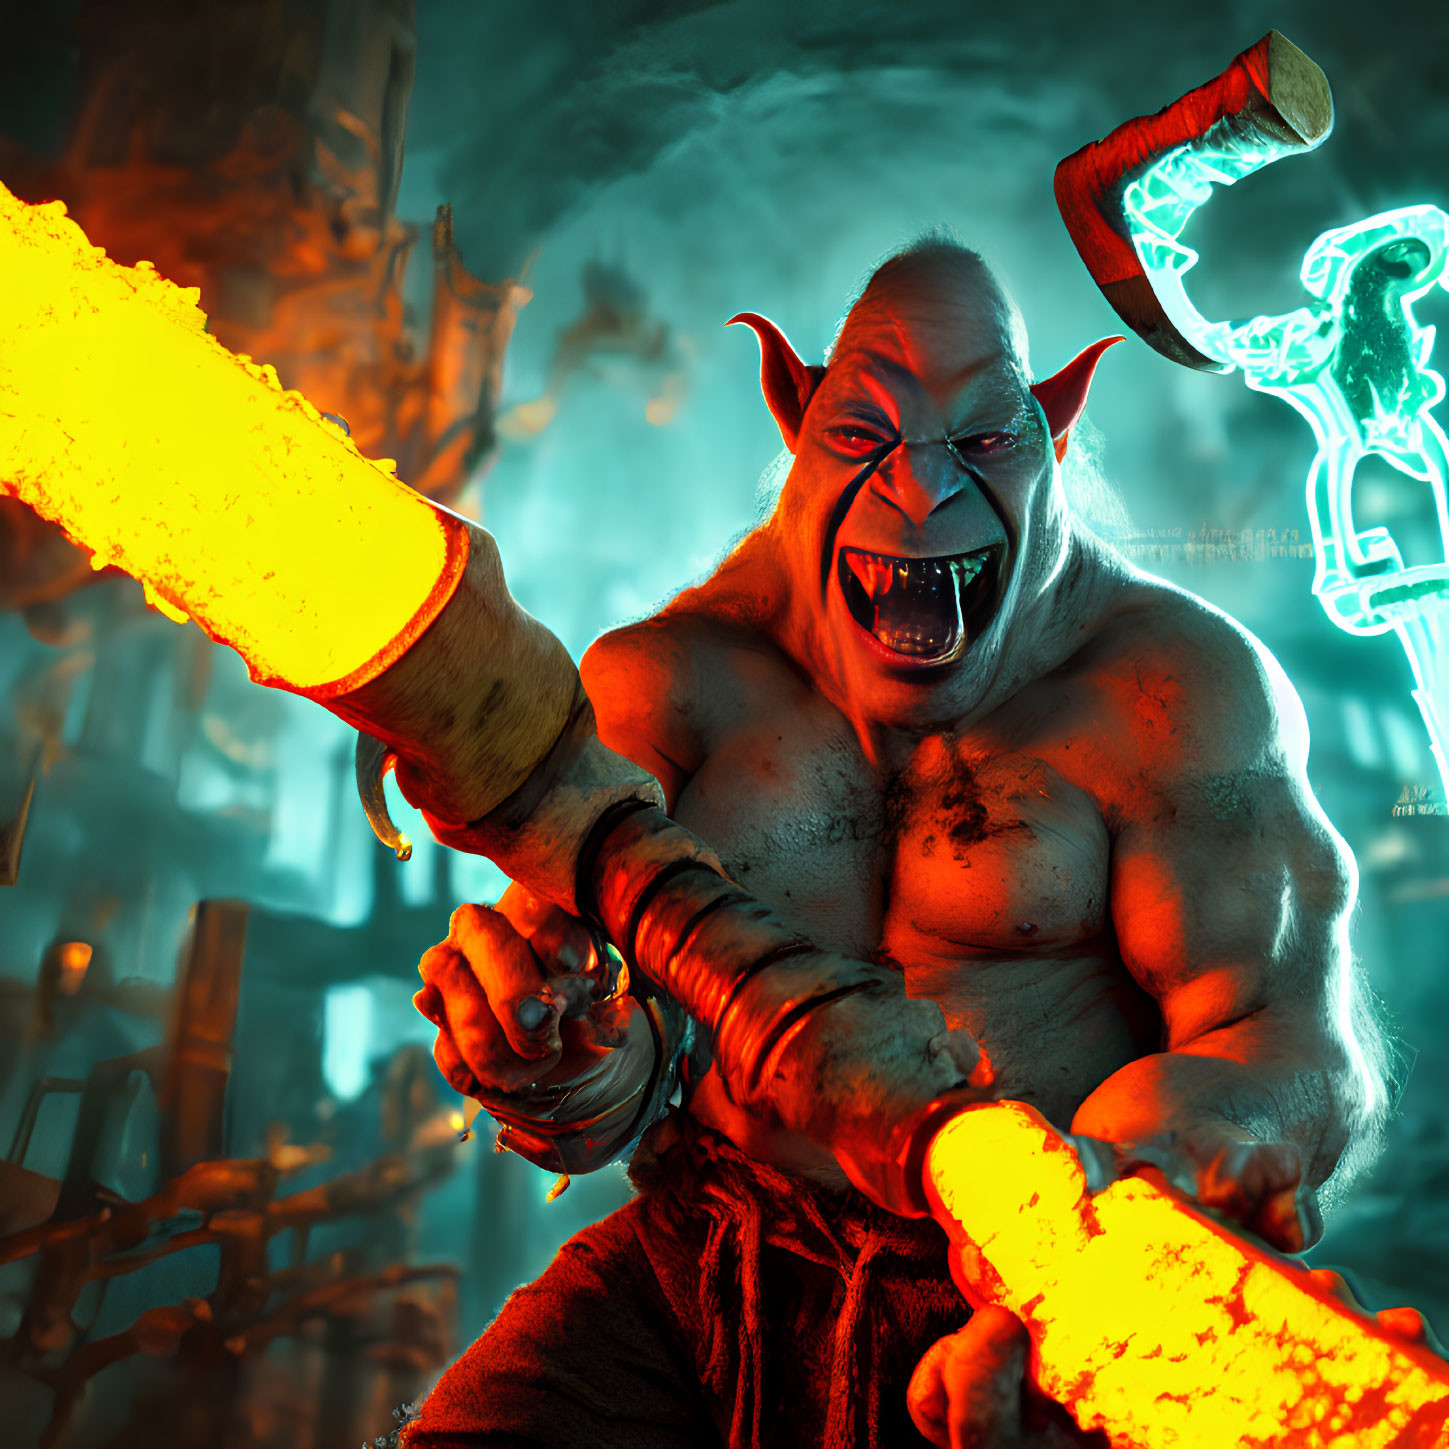 Muscular fantasy creature wielding glowing molten weapon in fiery forge